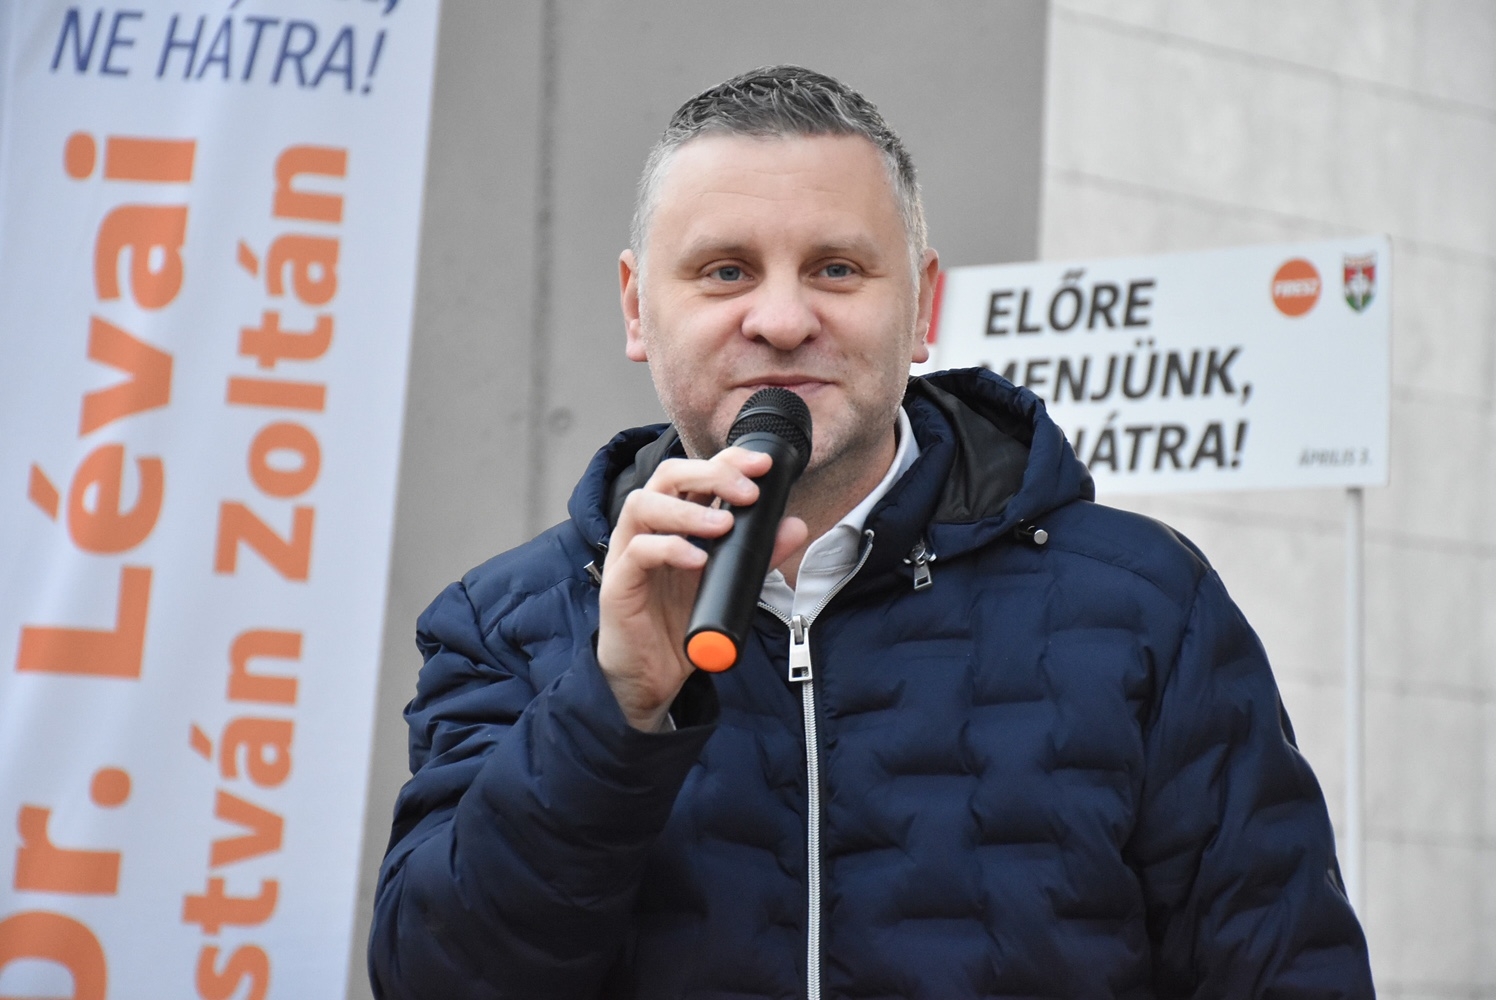 Botrány! Így próbál ellenzéket vásárolni magának a Fidesz